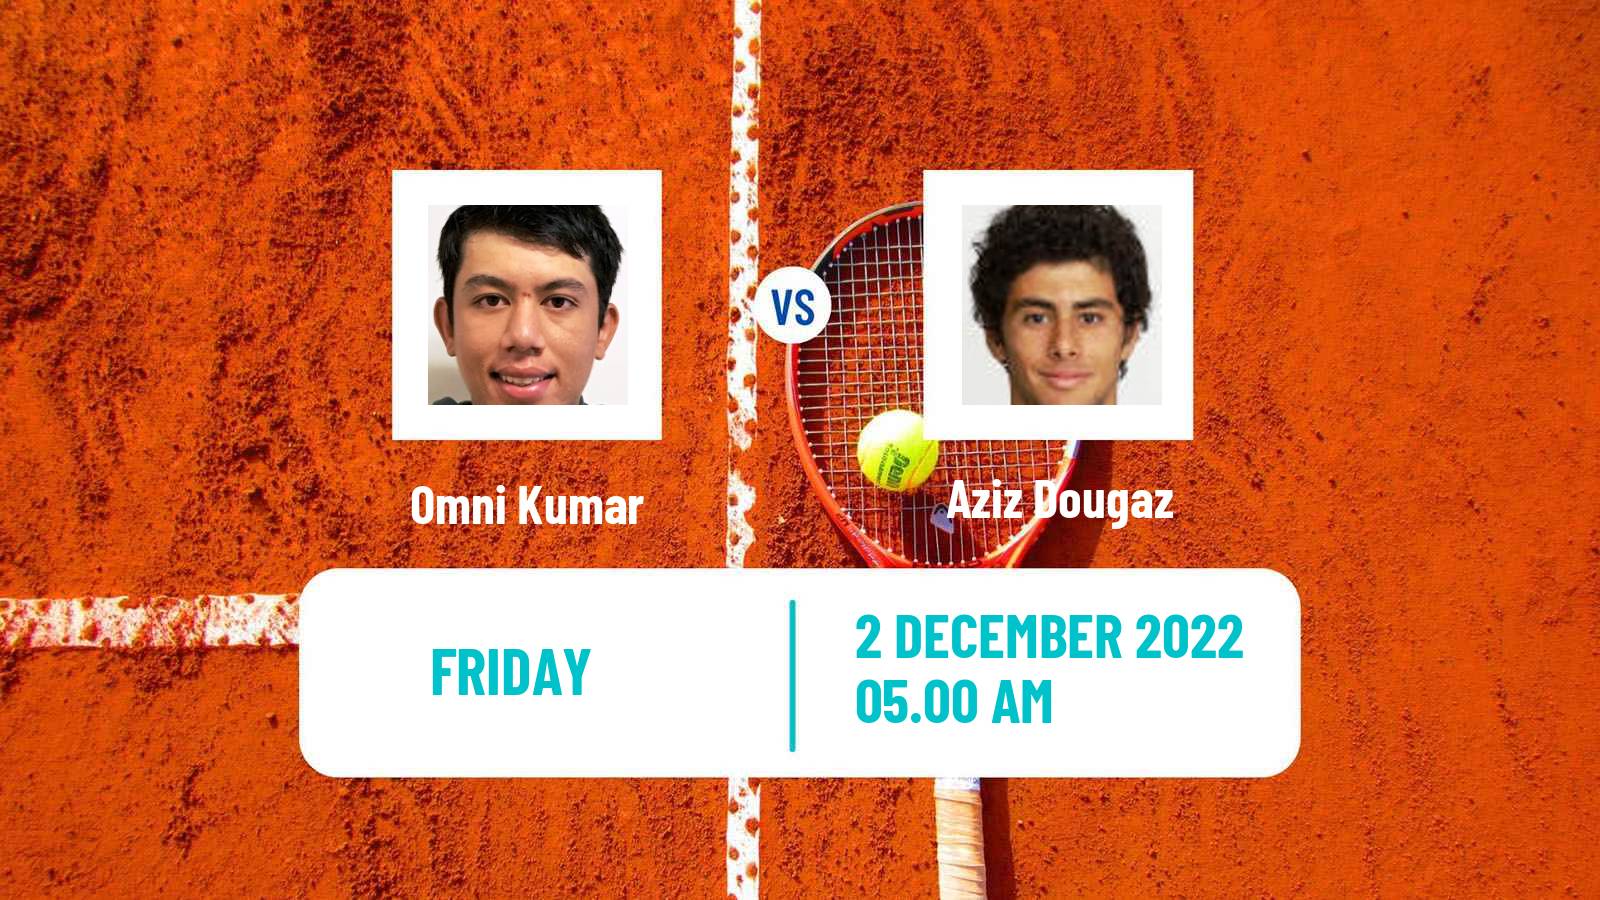 Tennis ITF Tournaments Omni Kumar - Aziz Dougaz